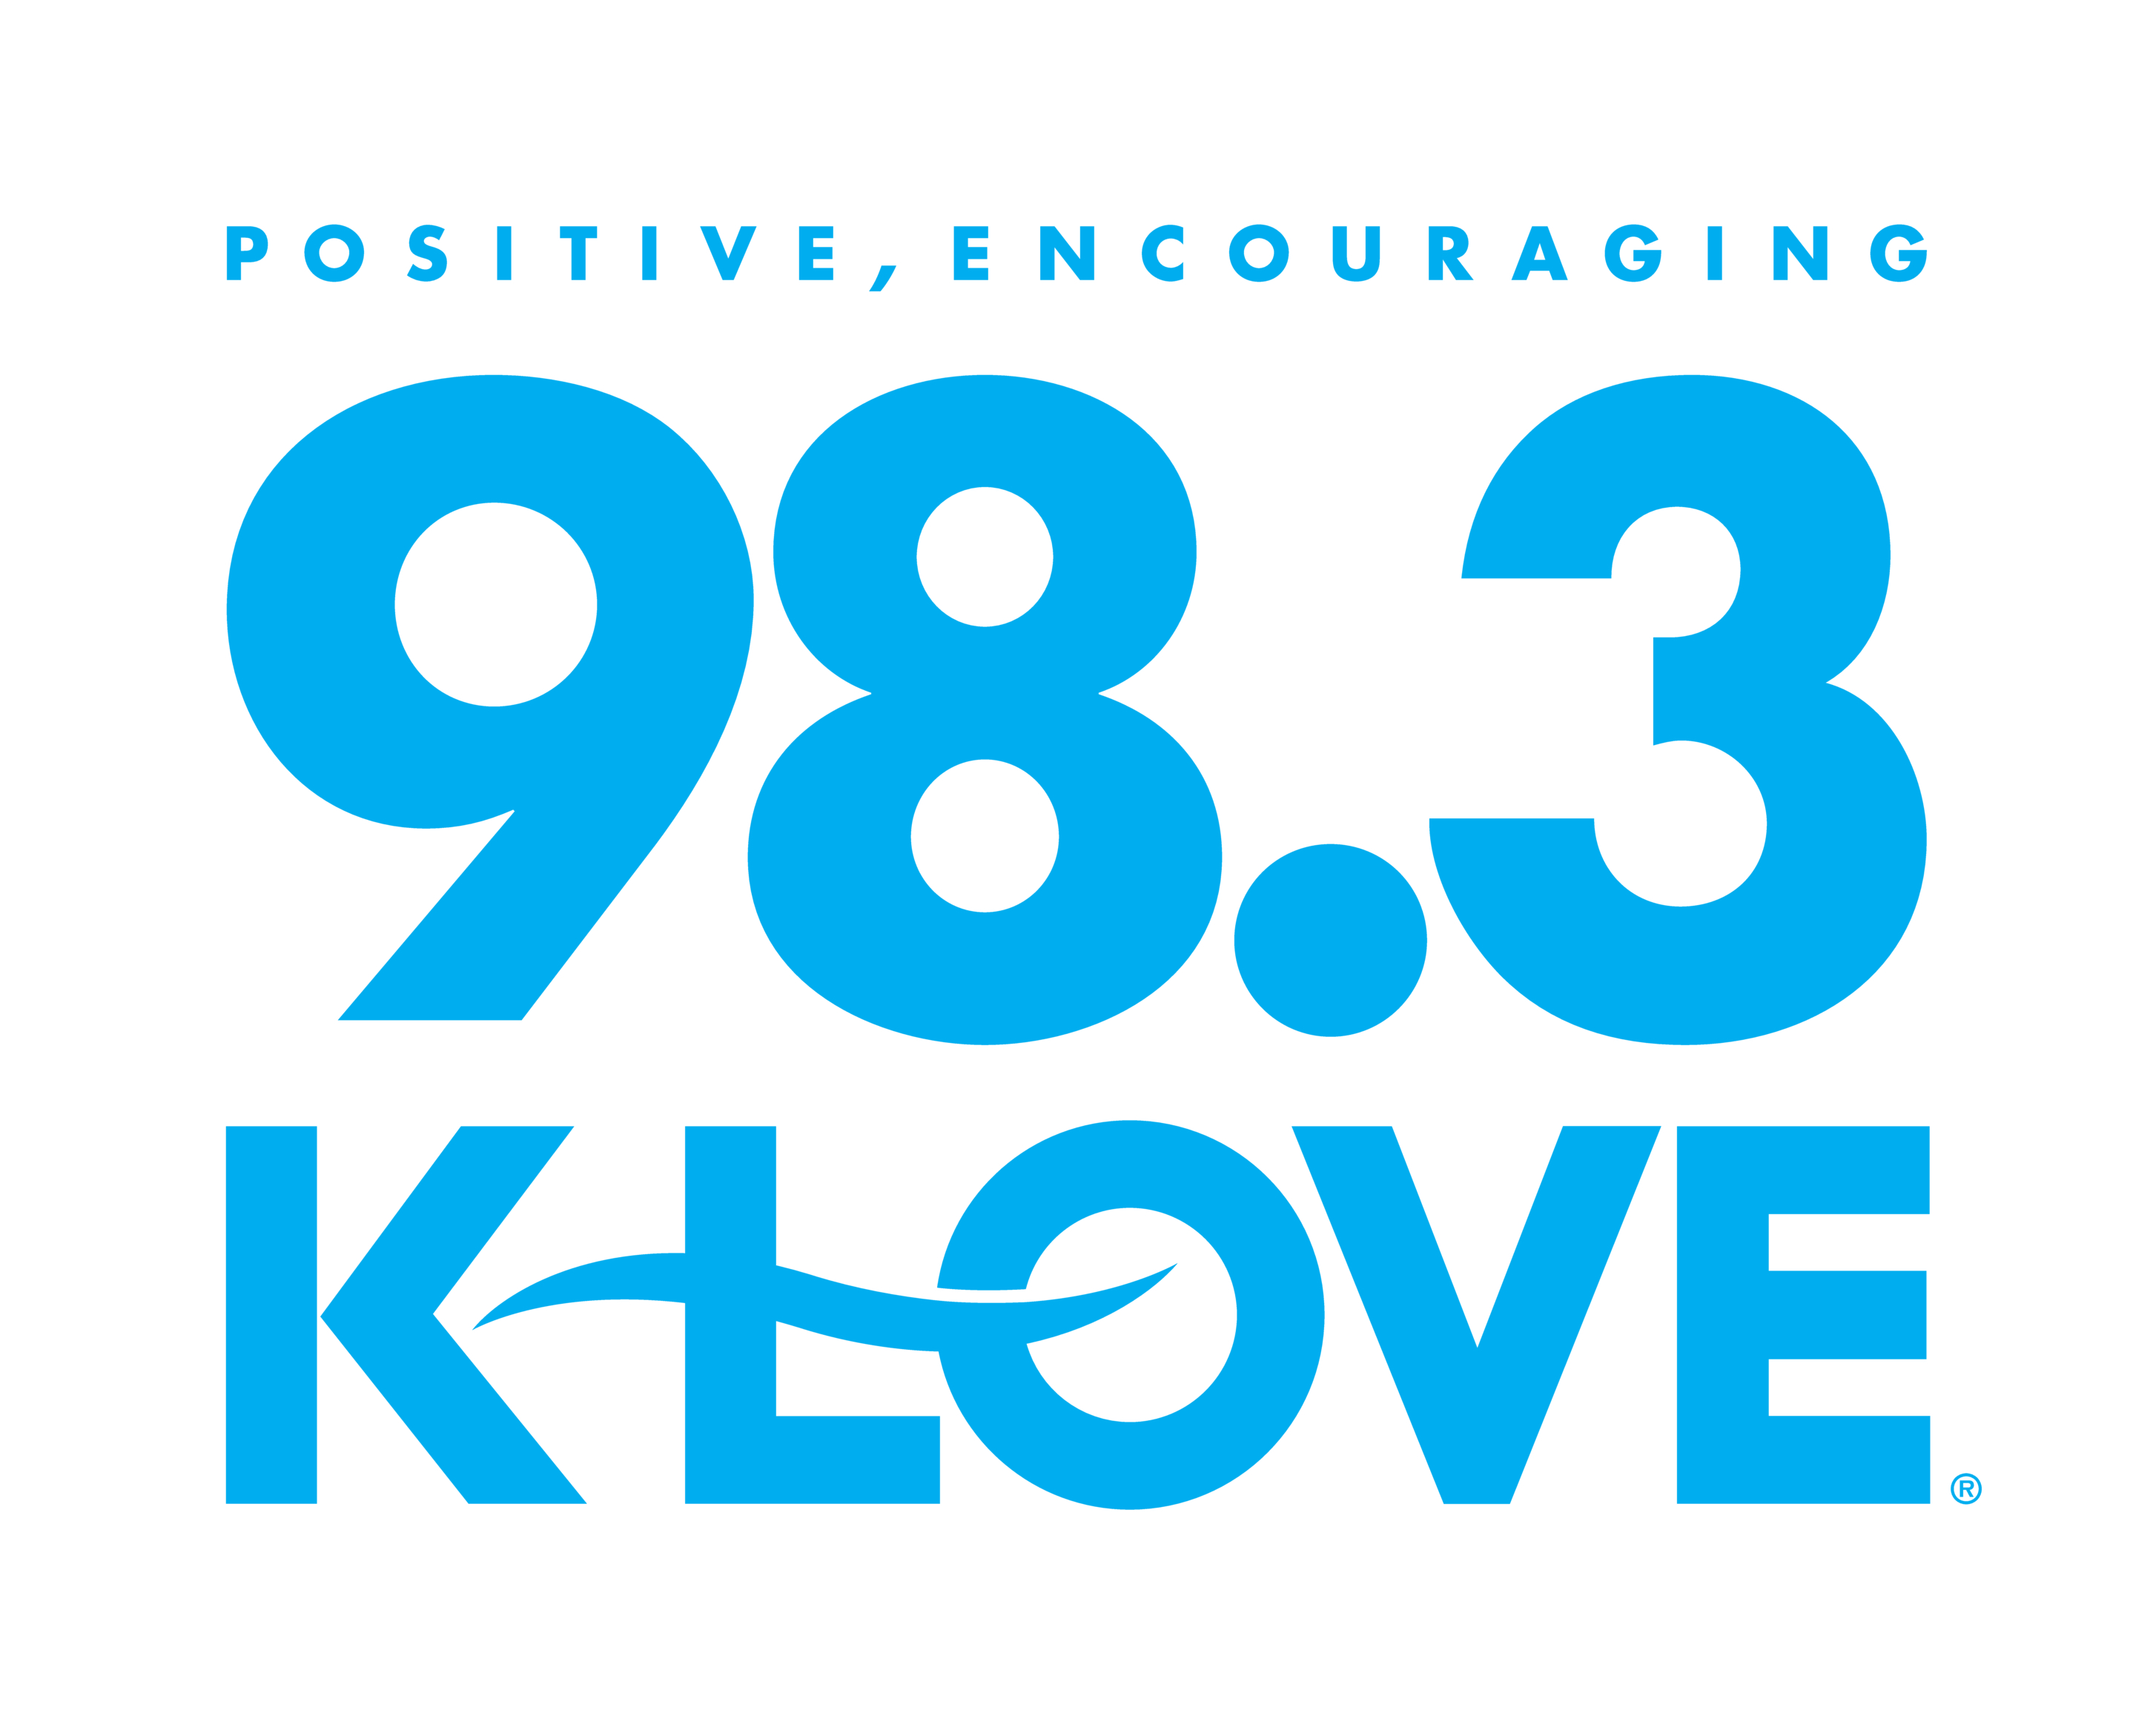 KLOVE Volunteer Orientation Positive Encouraging KLOVE